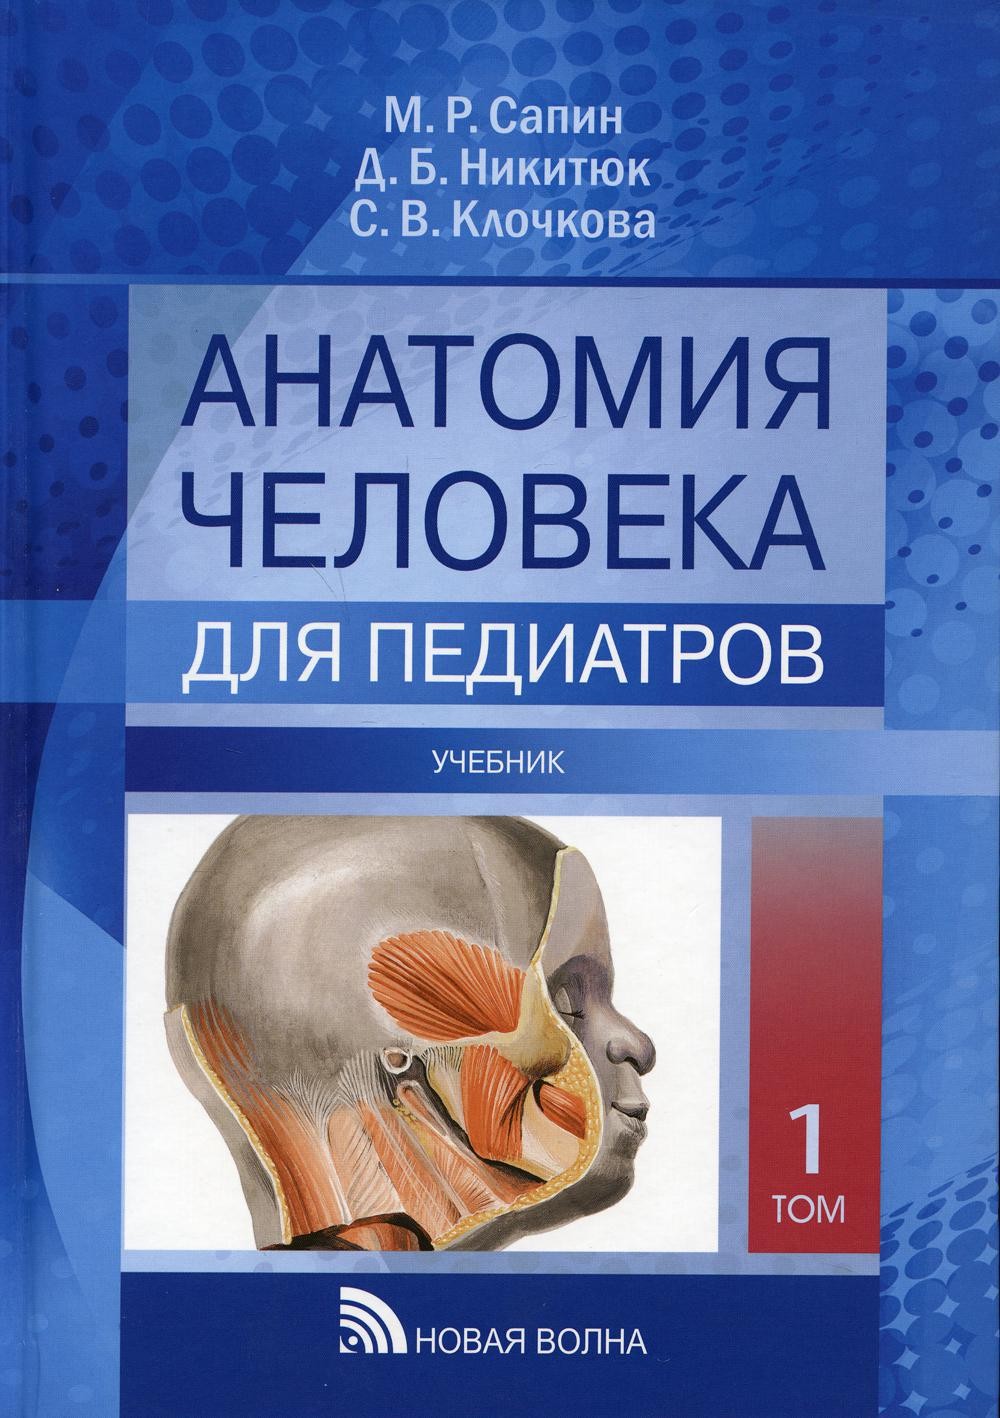 Сапин Анатомия человека для педиатров Учебник Т1